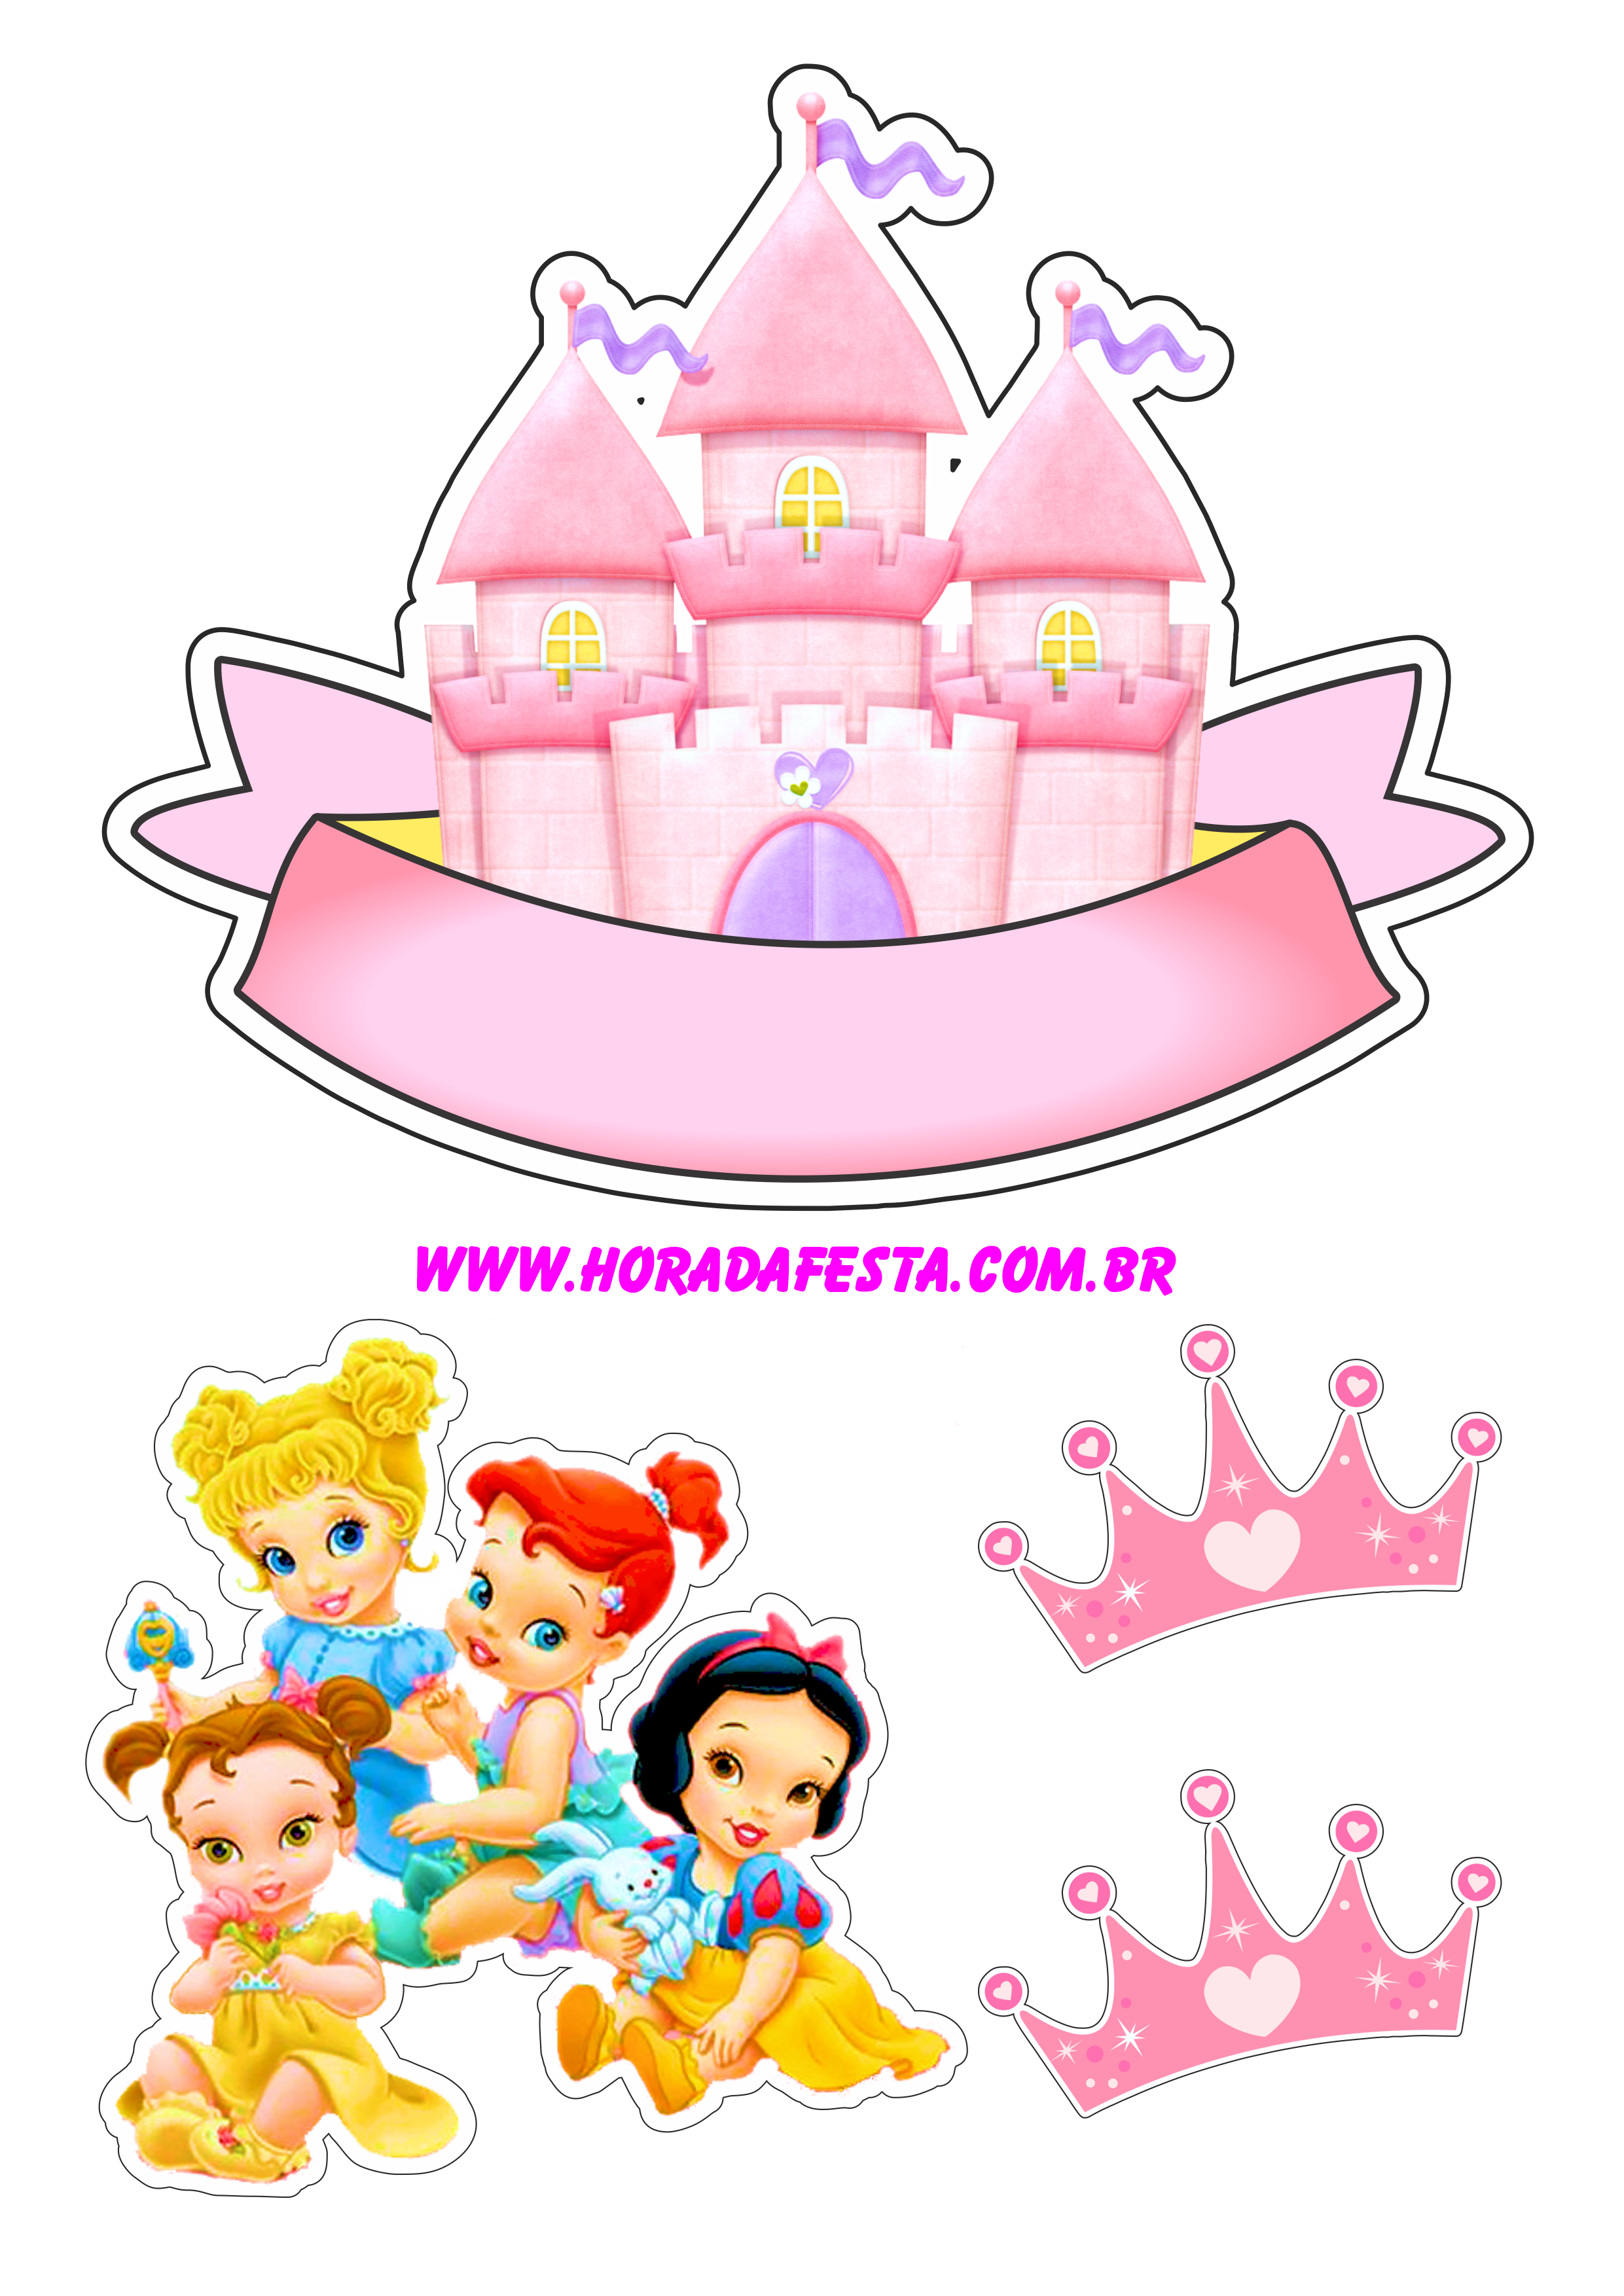 Princesas disney topo de bolo decoração de festa artigos de papelaria pronto para imprimir png